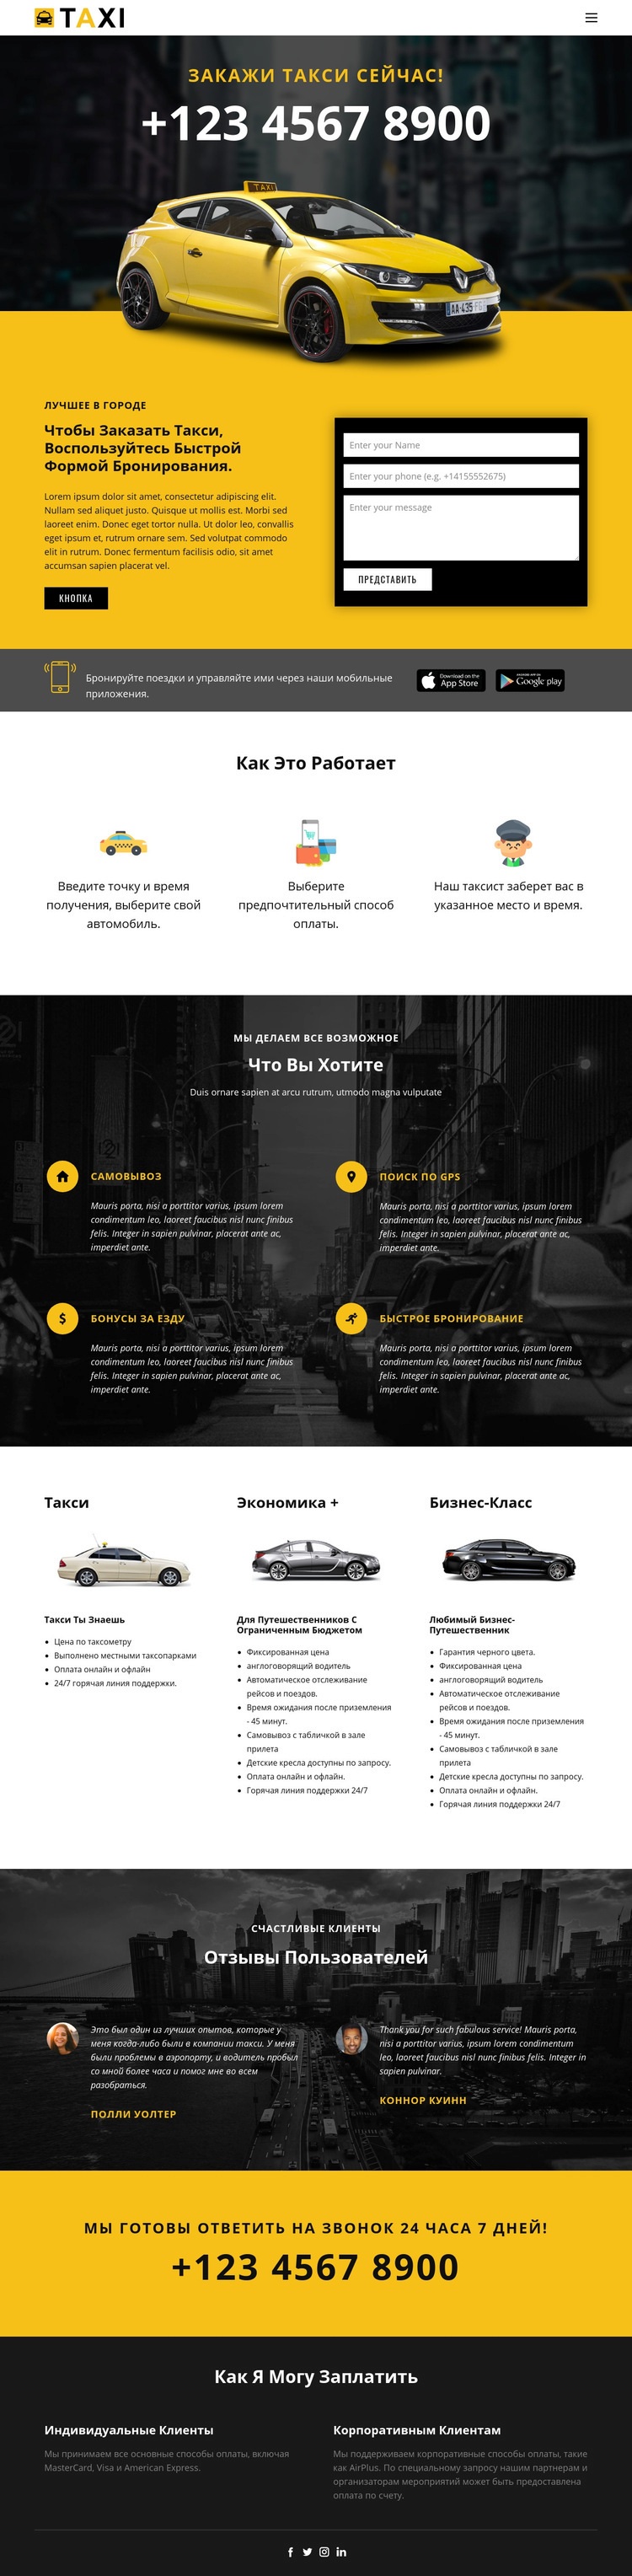 Самые быстрые машины такси WordPress тема